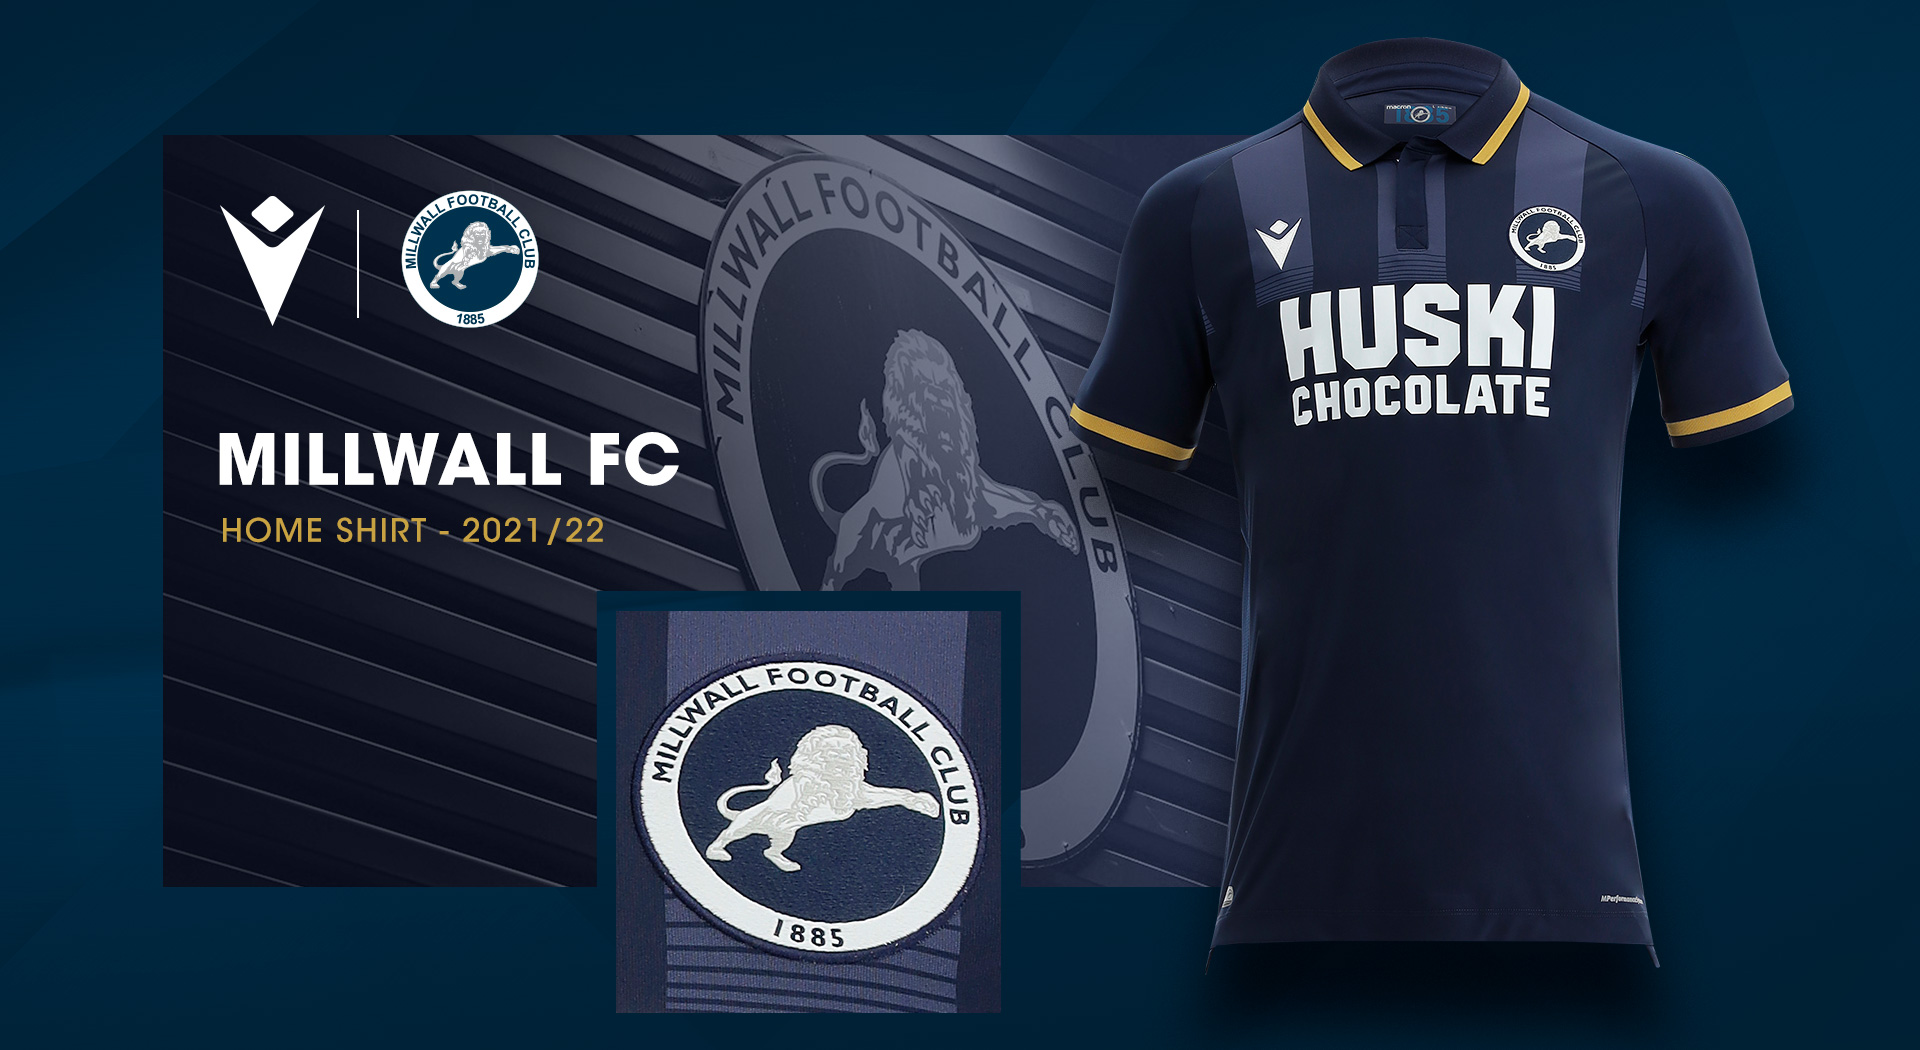 Millwall FC - Millwall Football Club launches 2023/24 away kit